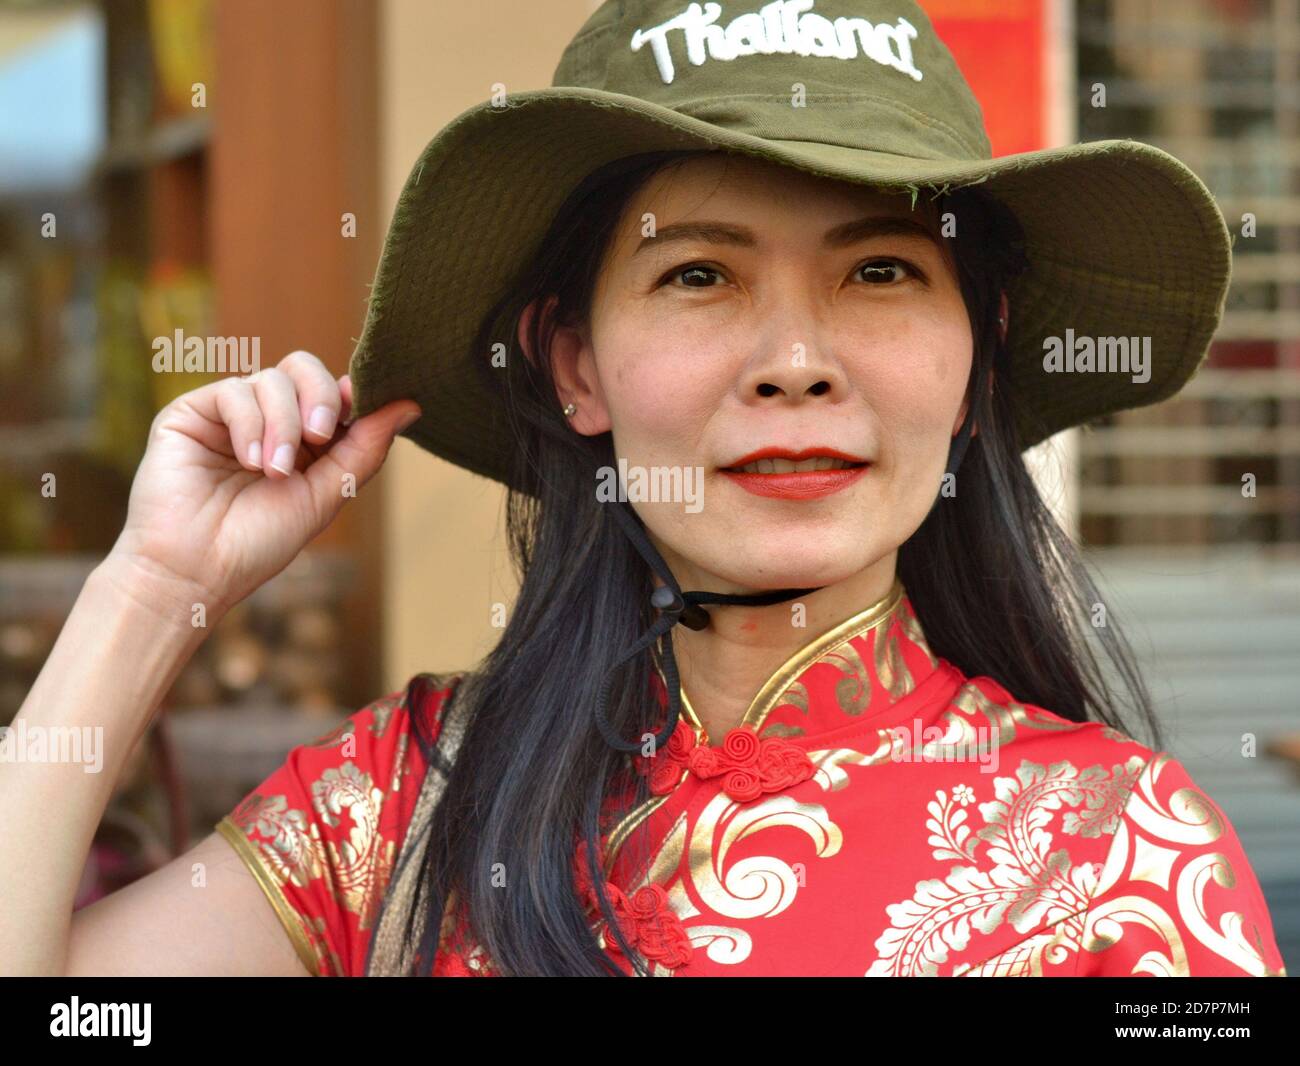 Die Thailändische Chinesin mittleren Alters trägt ein traditionelles chinesisches Kleid in Rot und Gold (Cheongsam) und einen grünen, breitkrempigen Thailand-Souvenir-Buschhut. Stockfoto